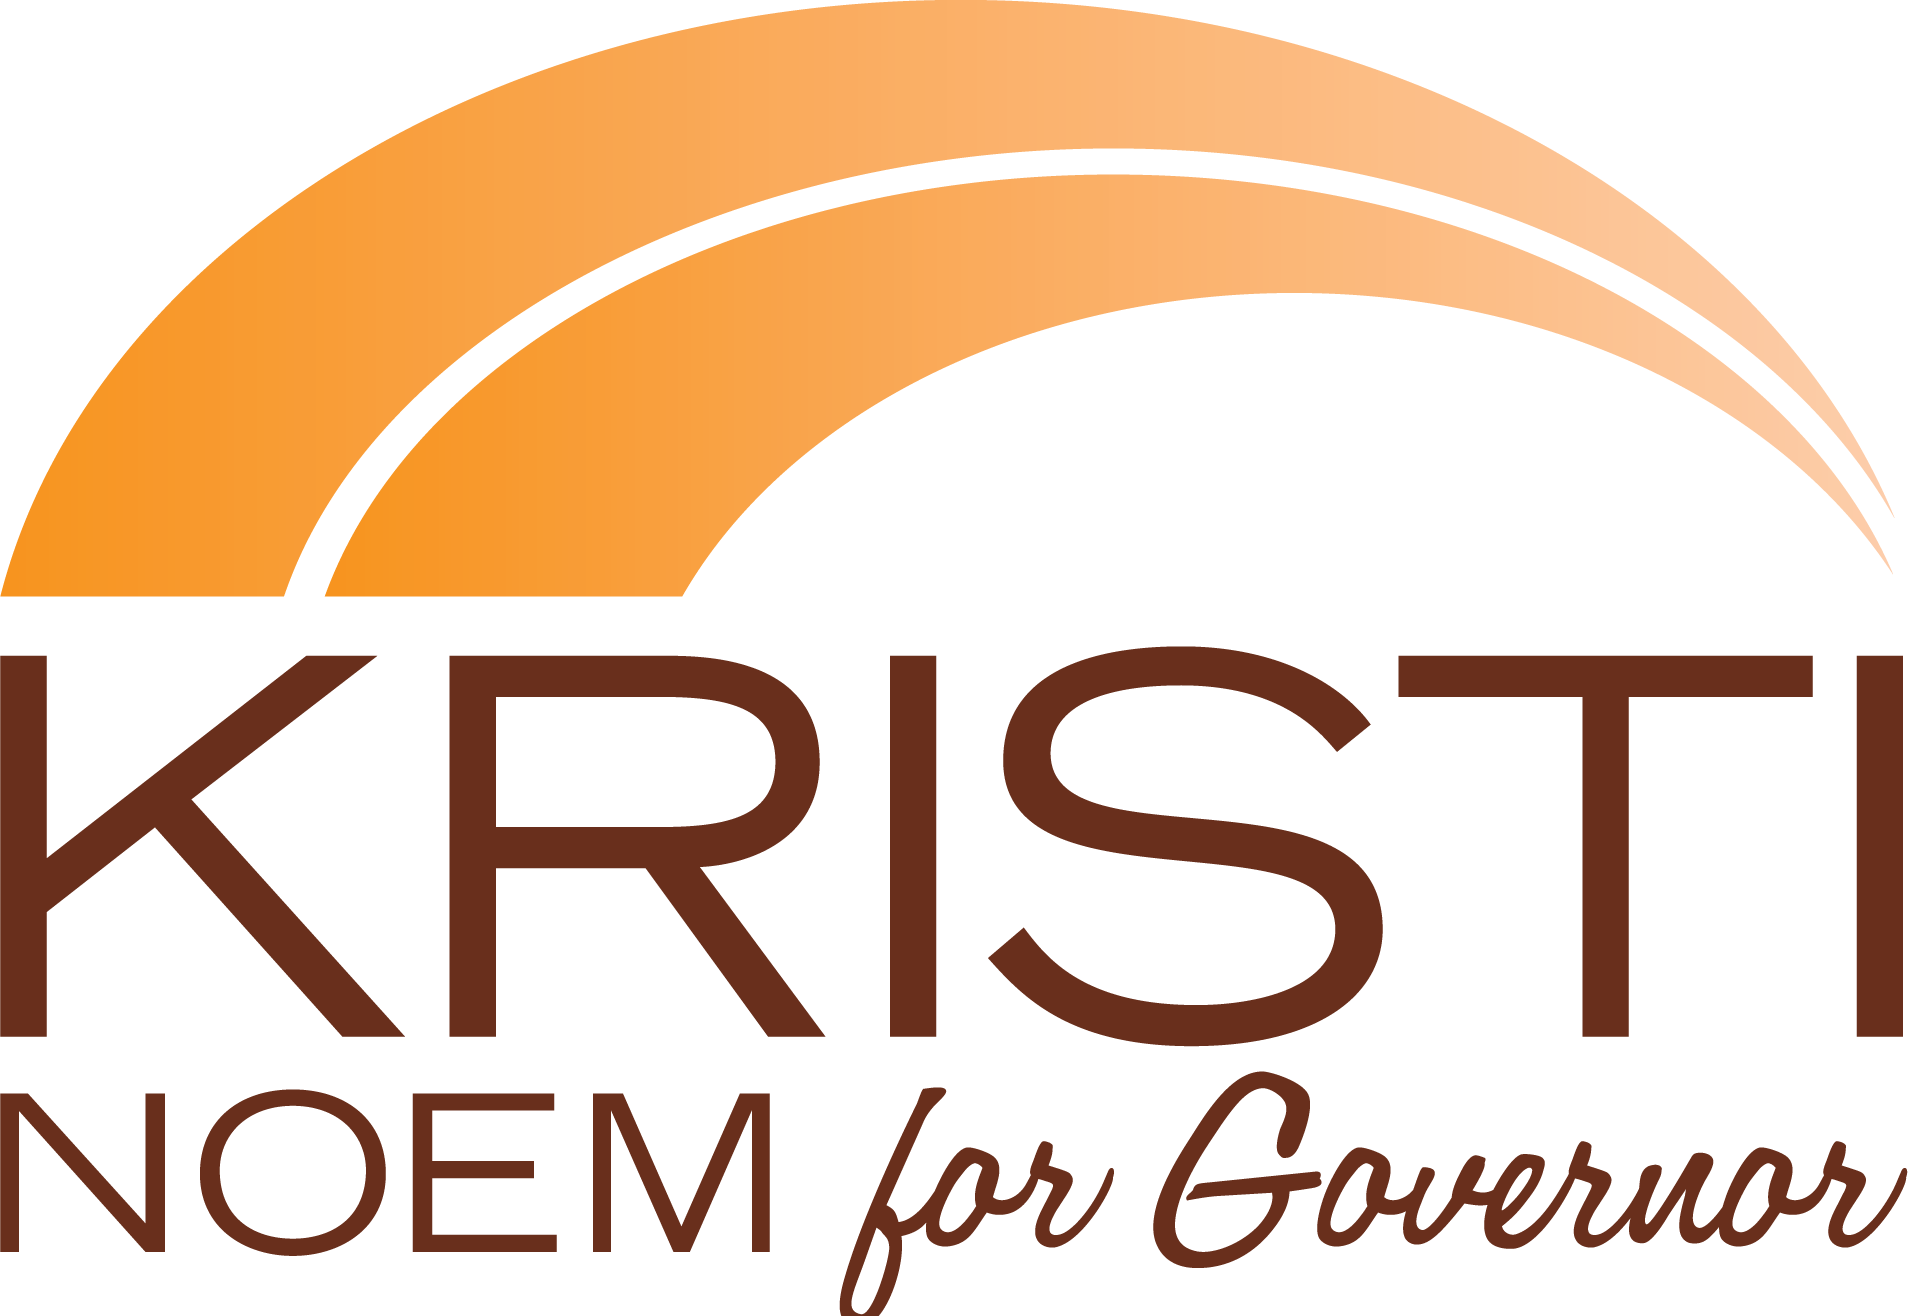 Kristi for governor